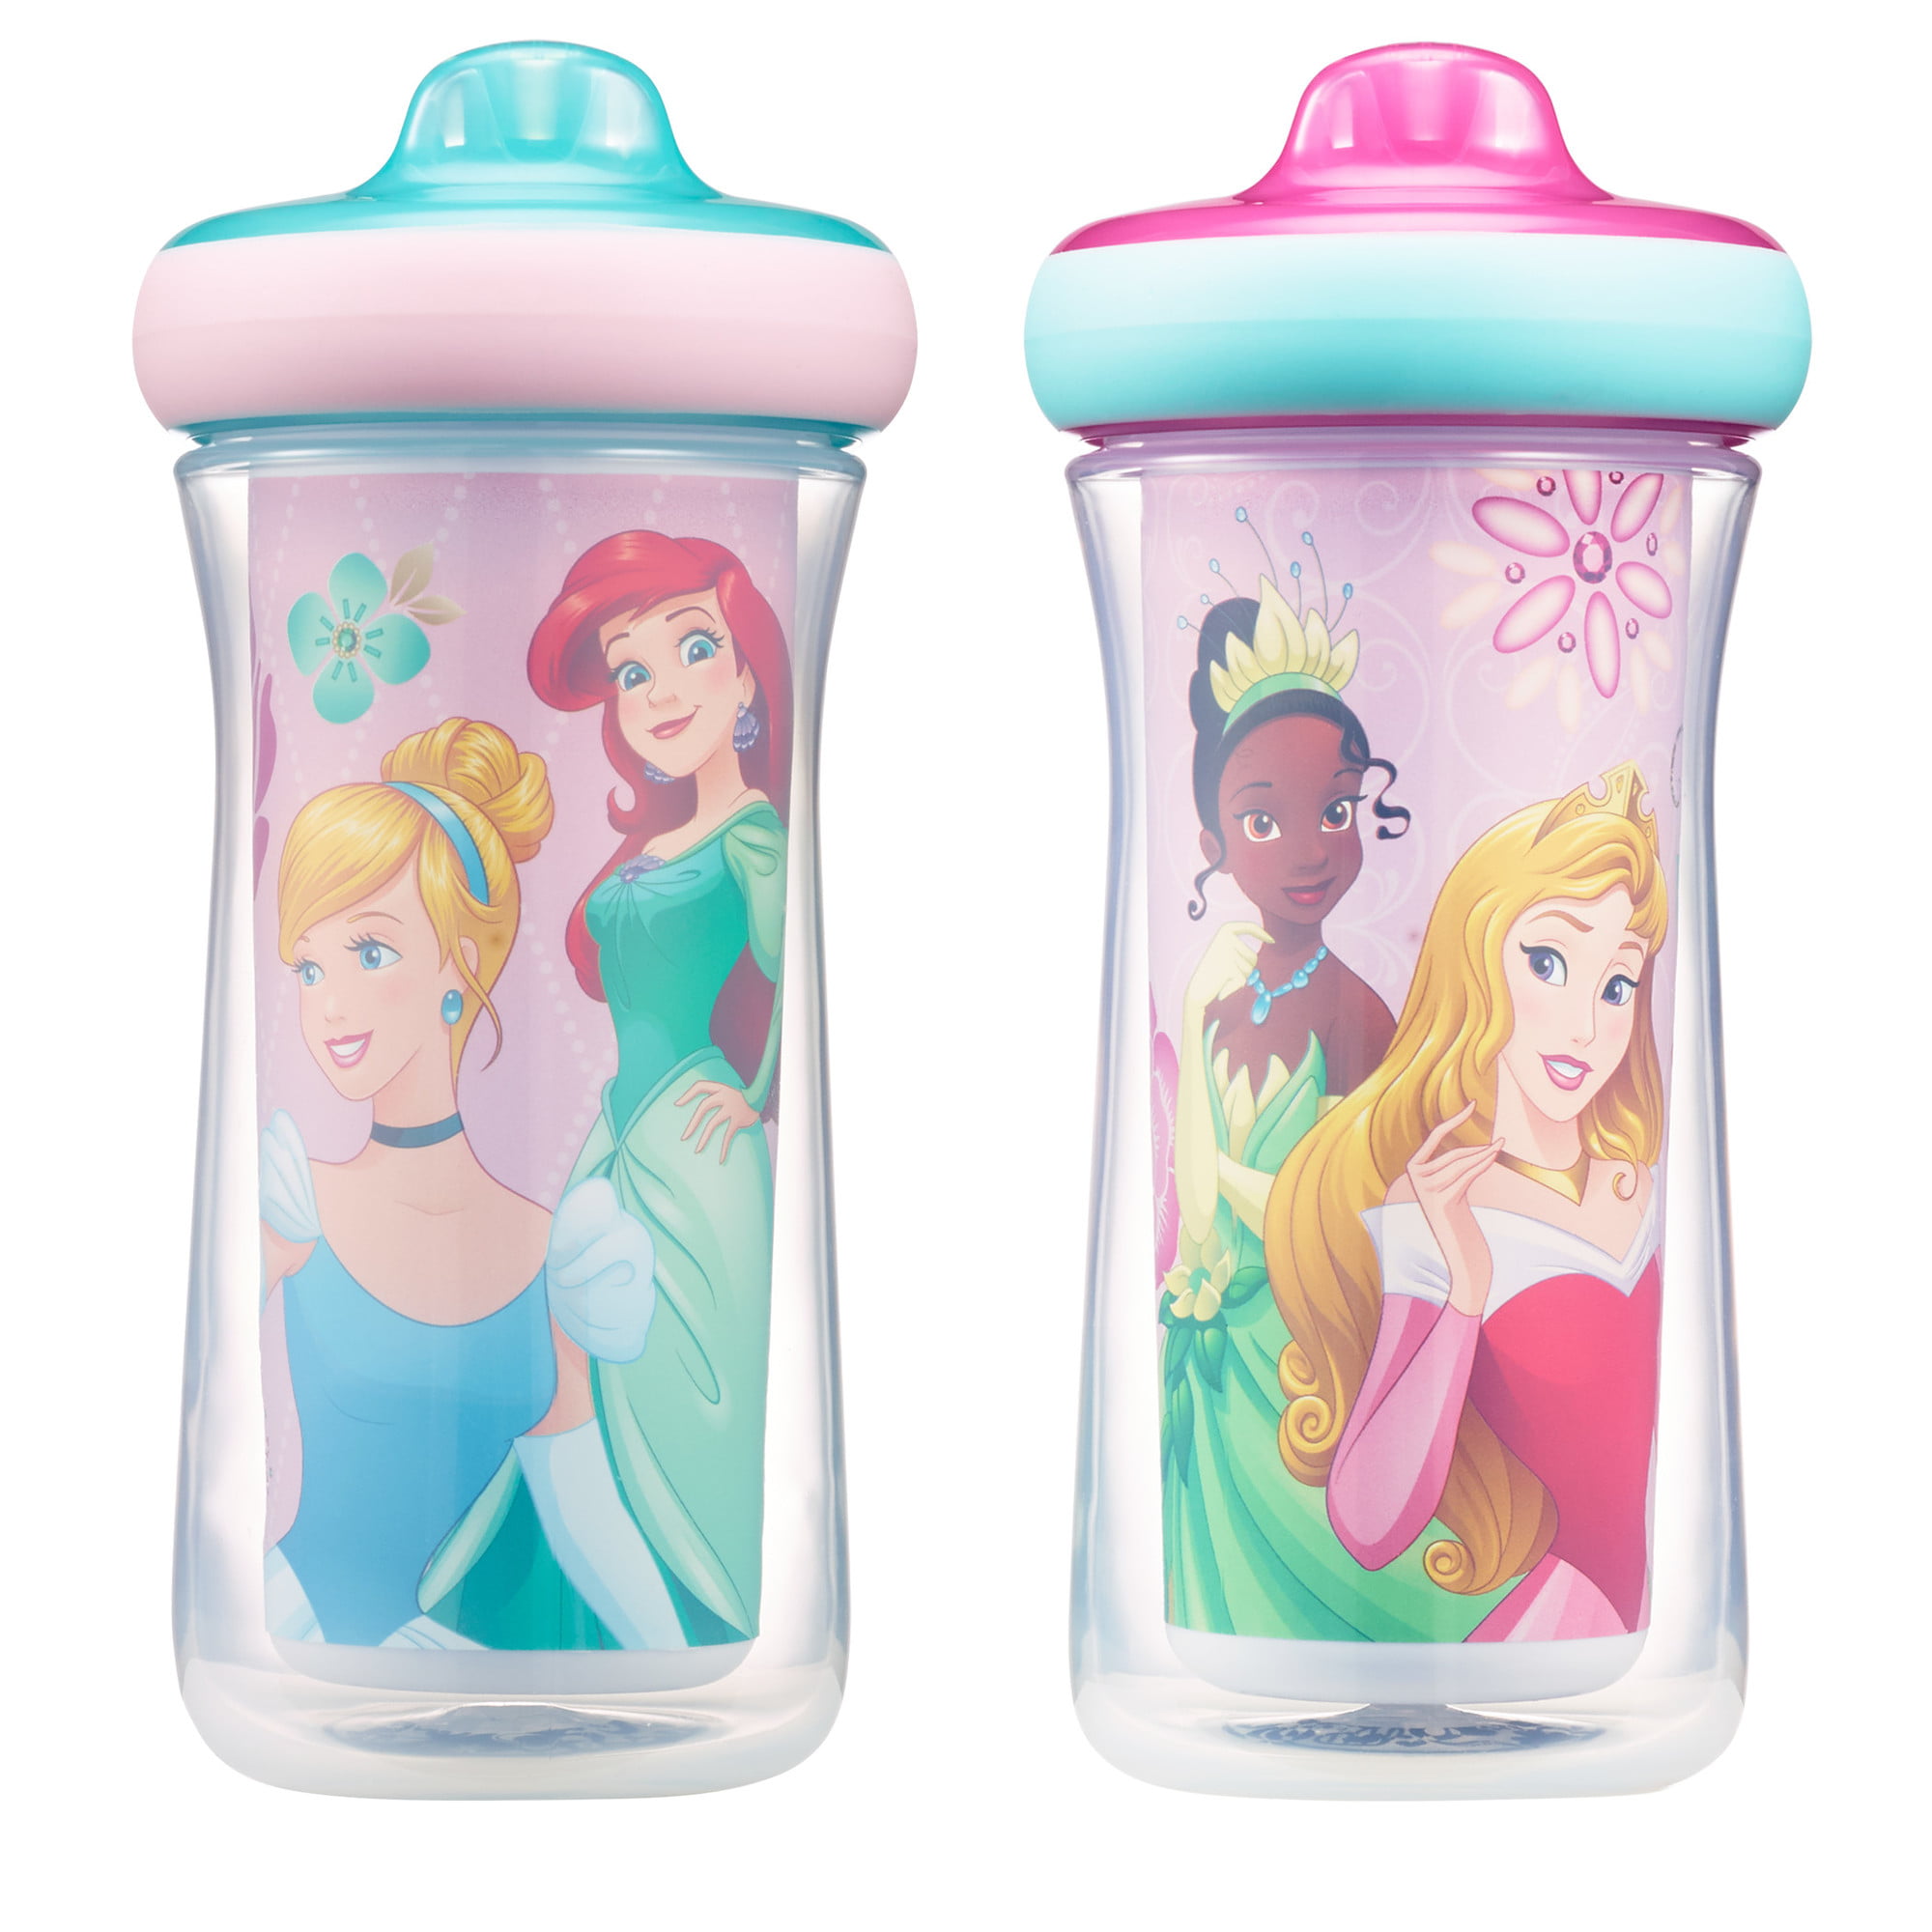 Princess Cup; Princess kids cup;Kids Tumbler; Personalized kids cup; Personalized Princess cup